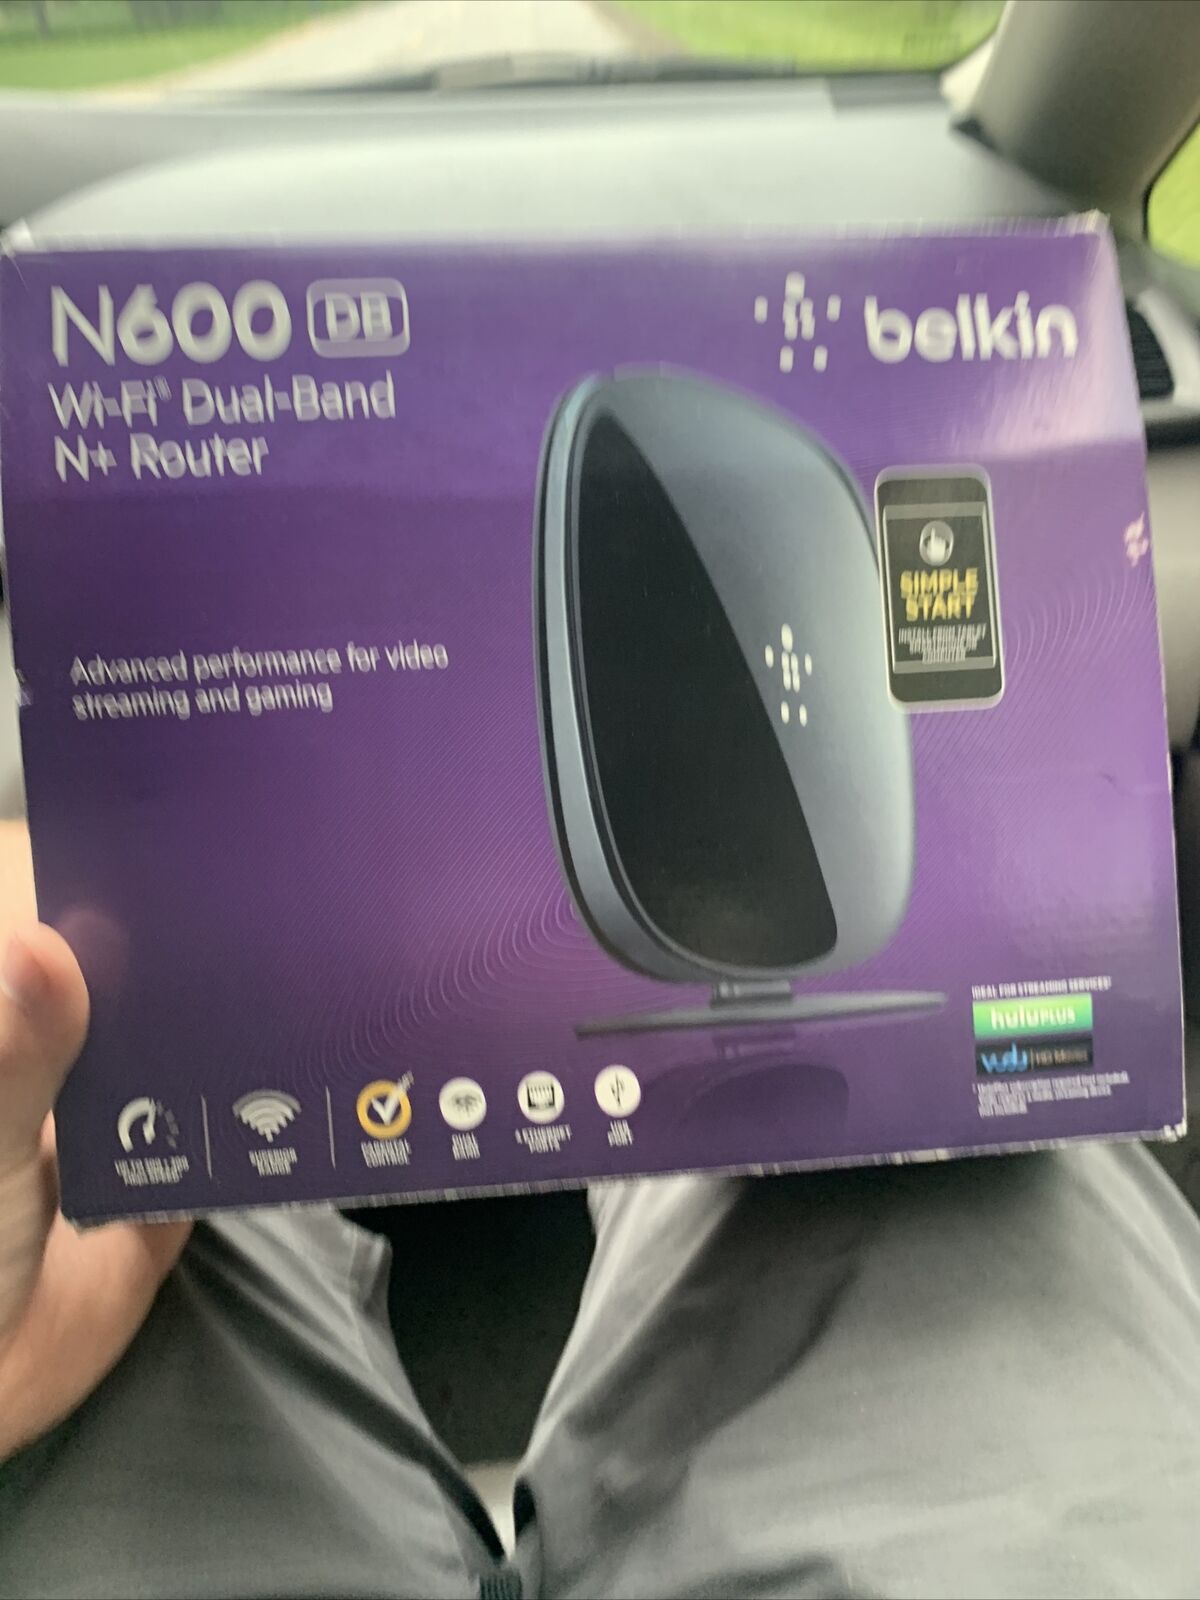 Belkin N600 DB Wi-Fi Dual-Band N+ Router